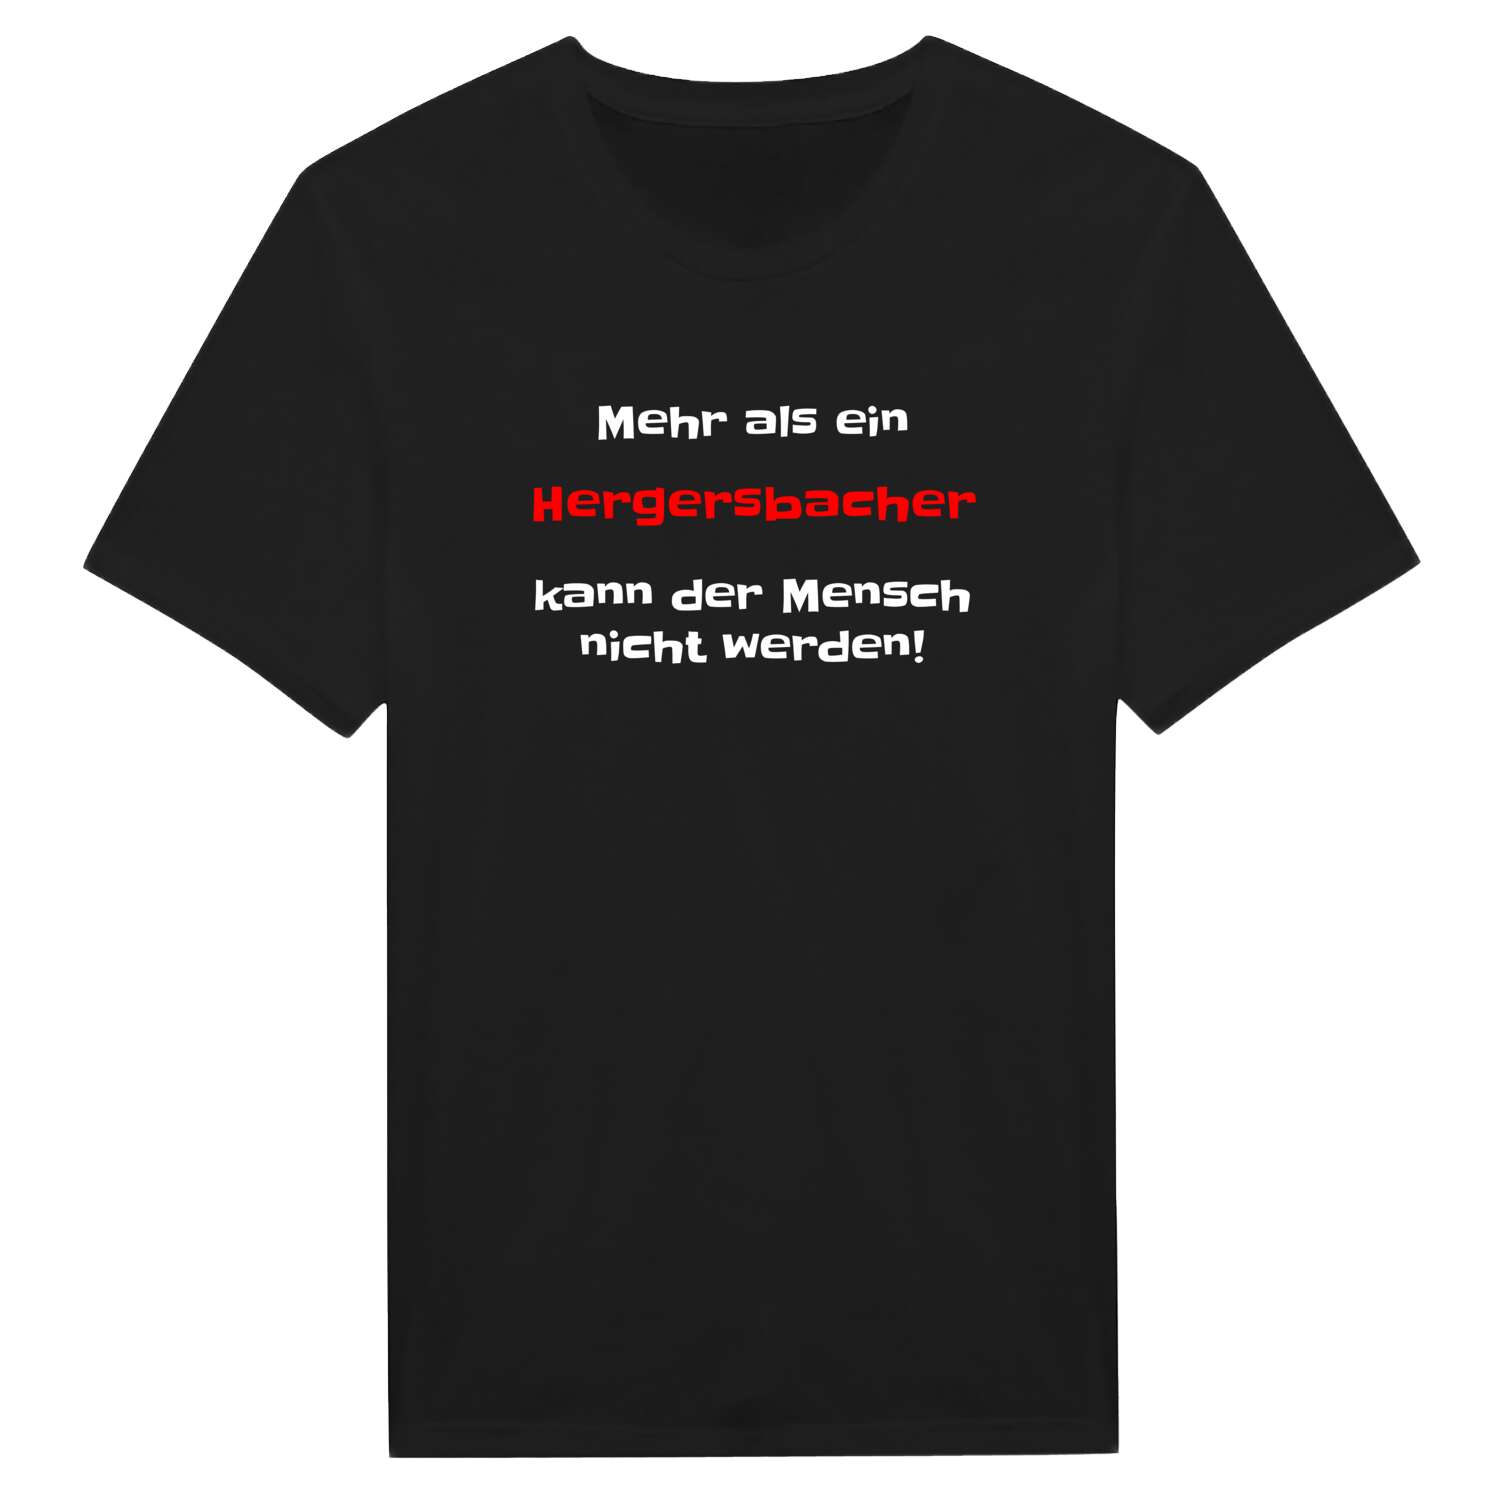 Hergersbach T-Shirt »Mehr als ein«